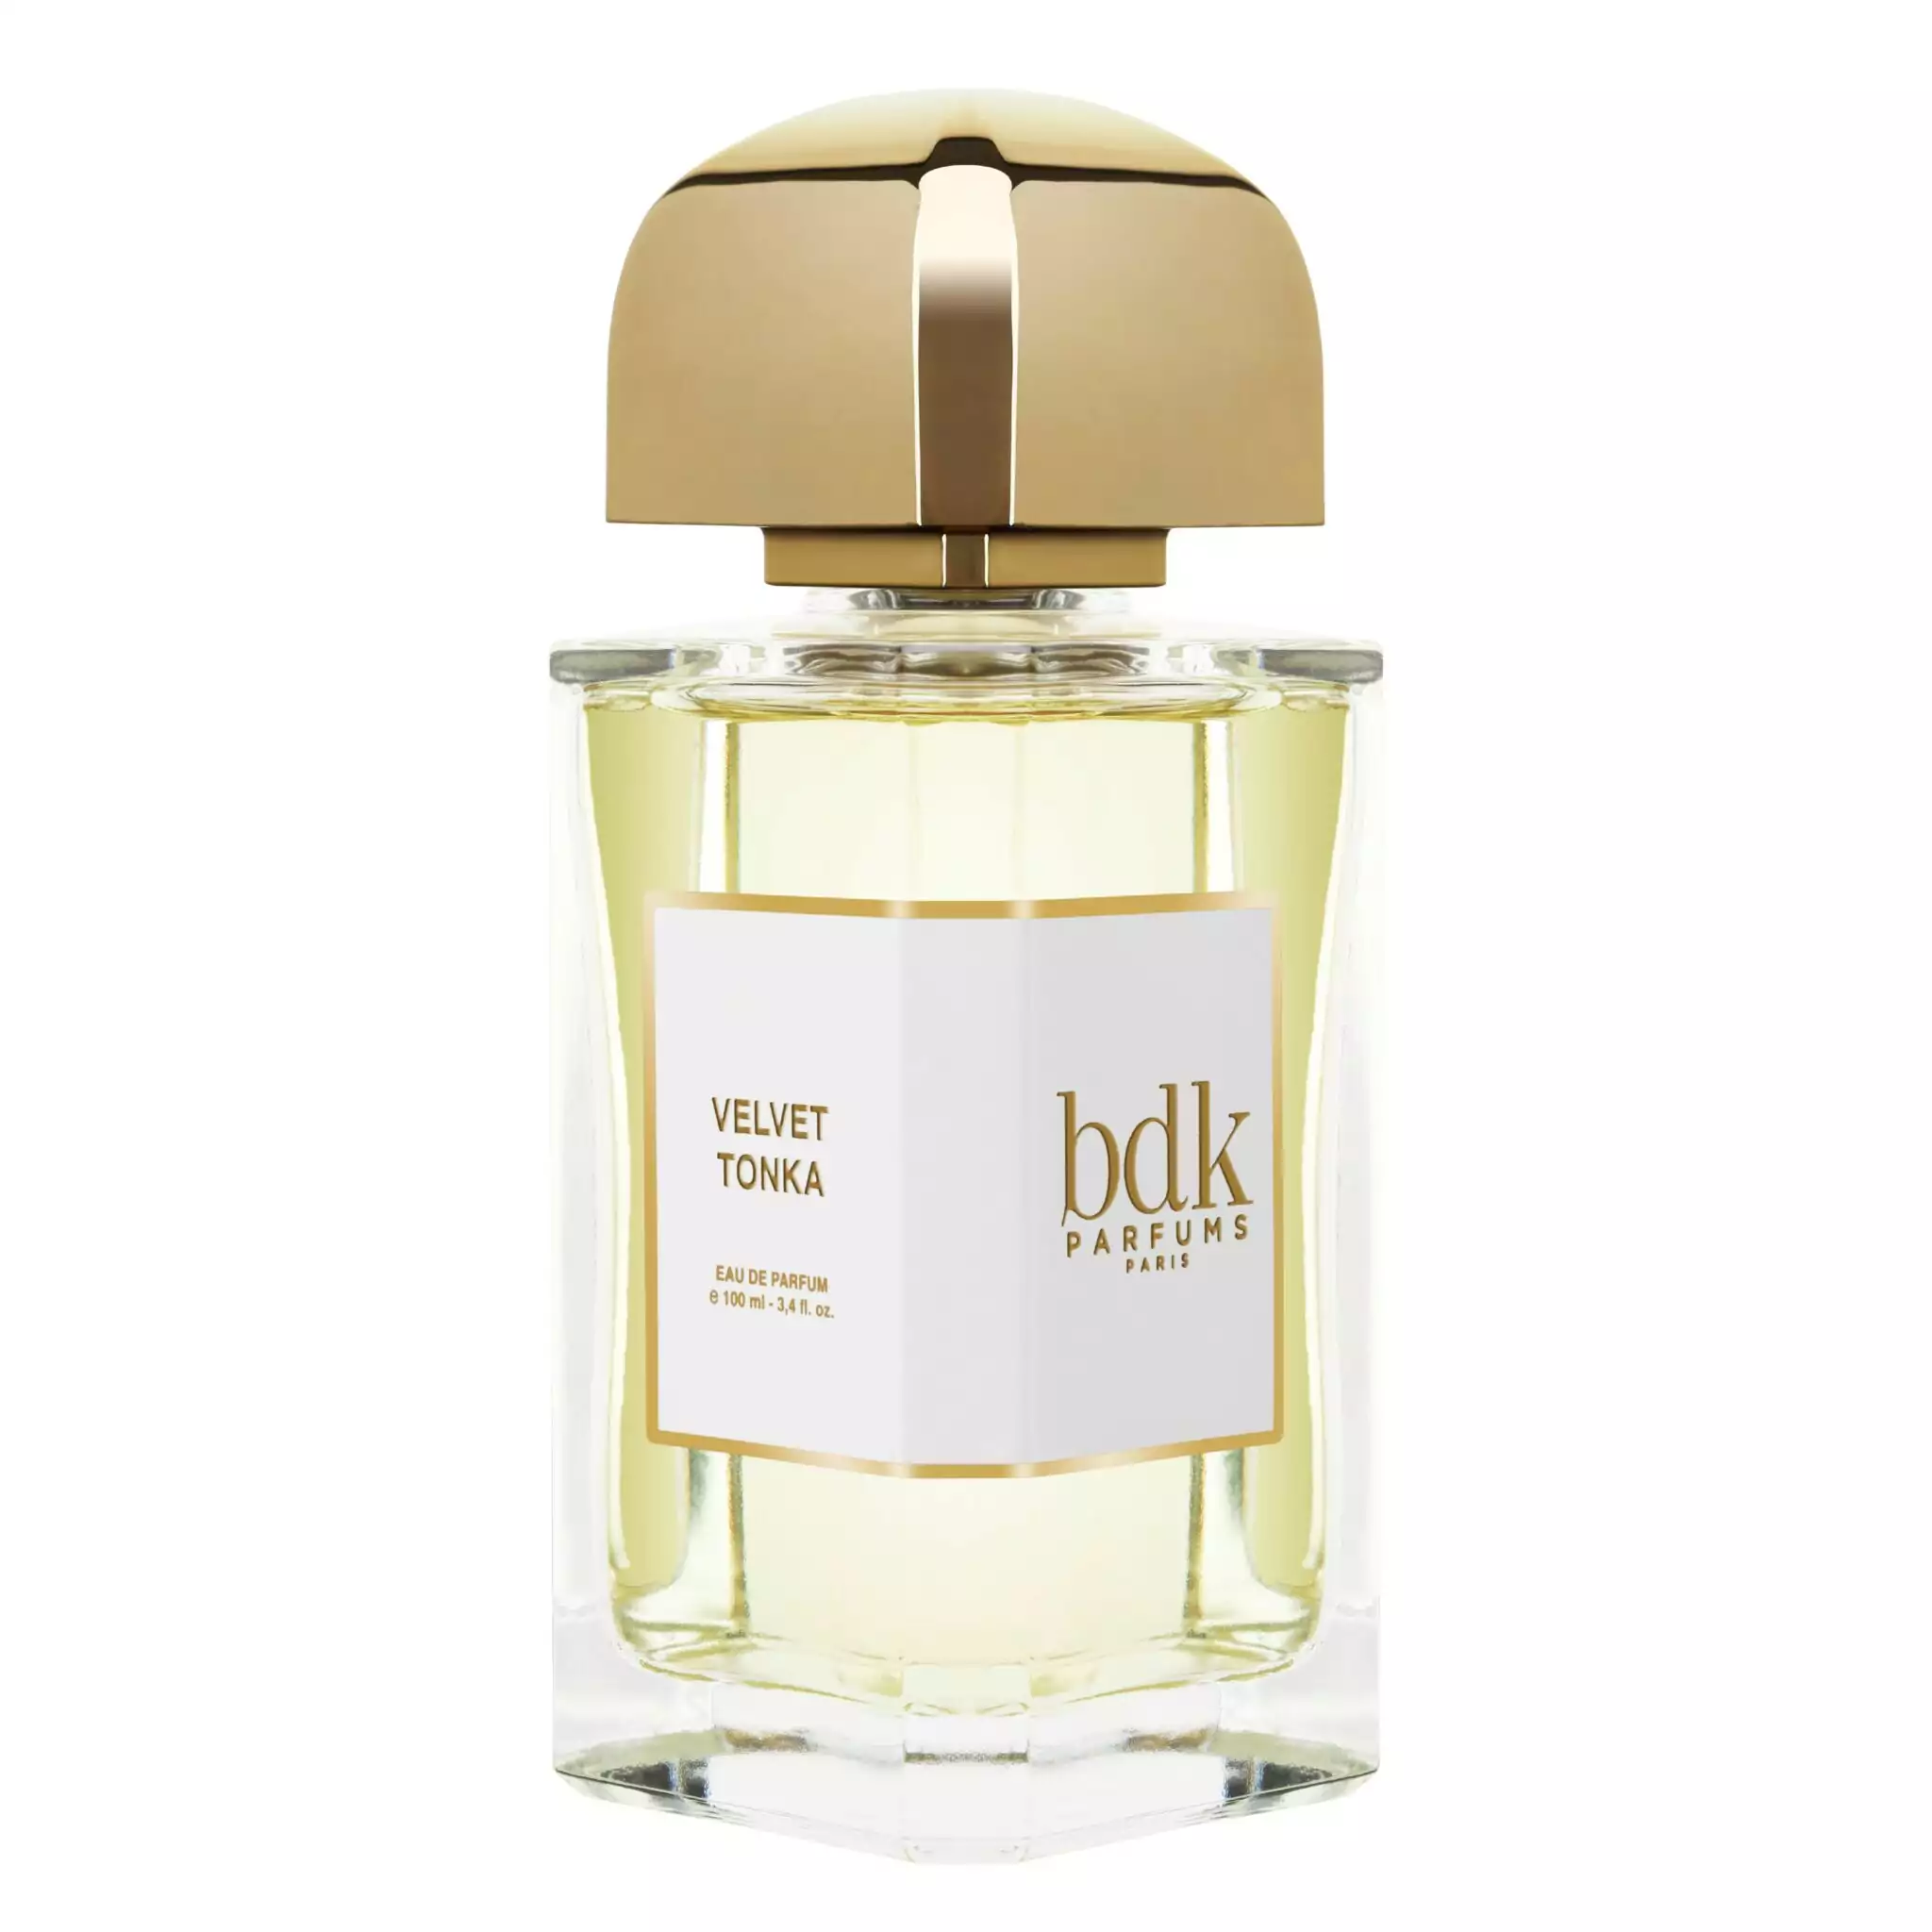 Velvet Tonka par BDK Parfums